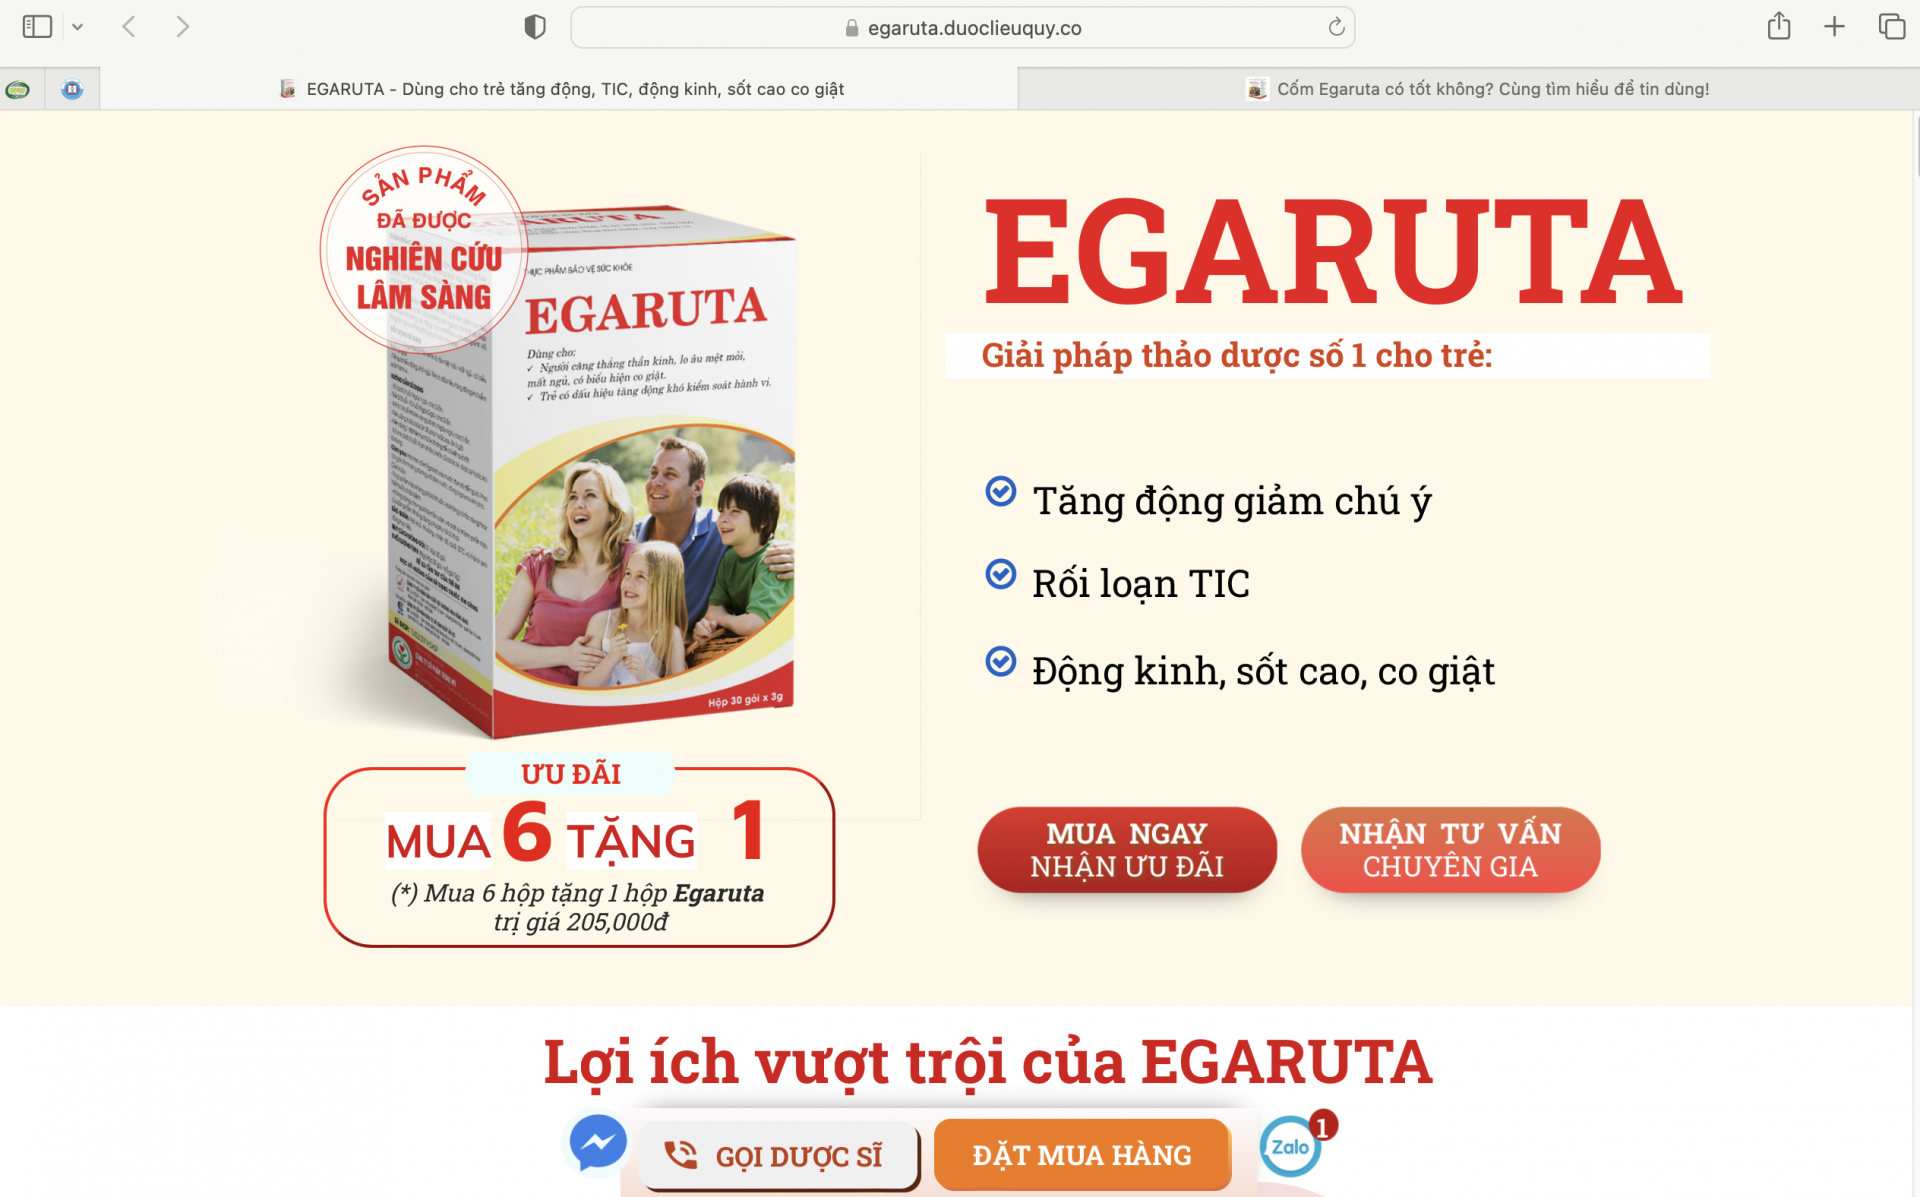 Egaruta quảng cáo "nổ" công dụng thực phẩm chức năng như thuốc chữa bệnh